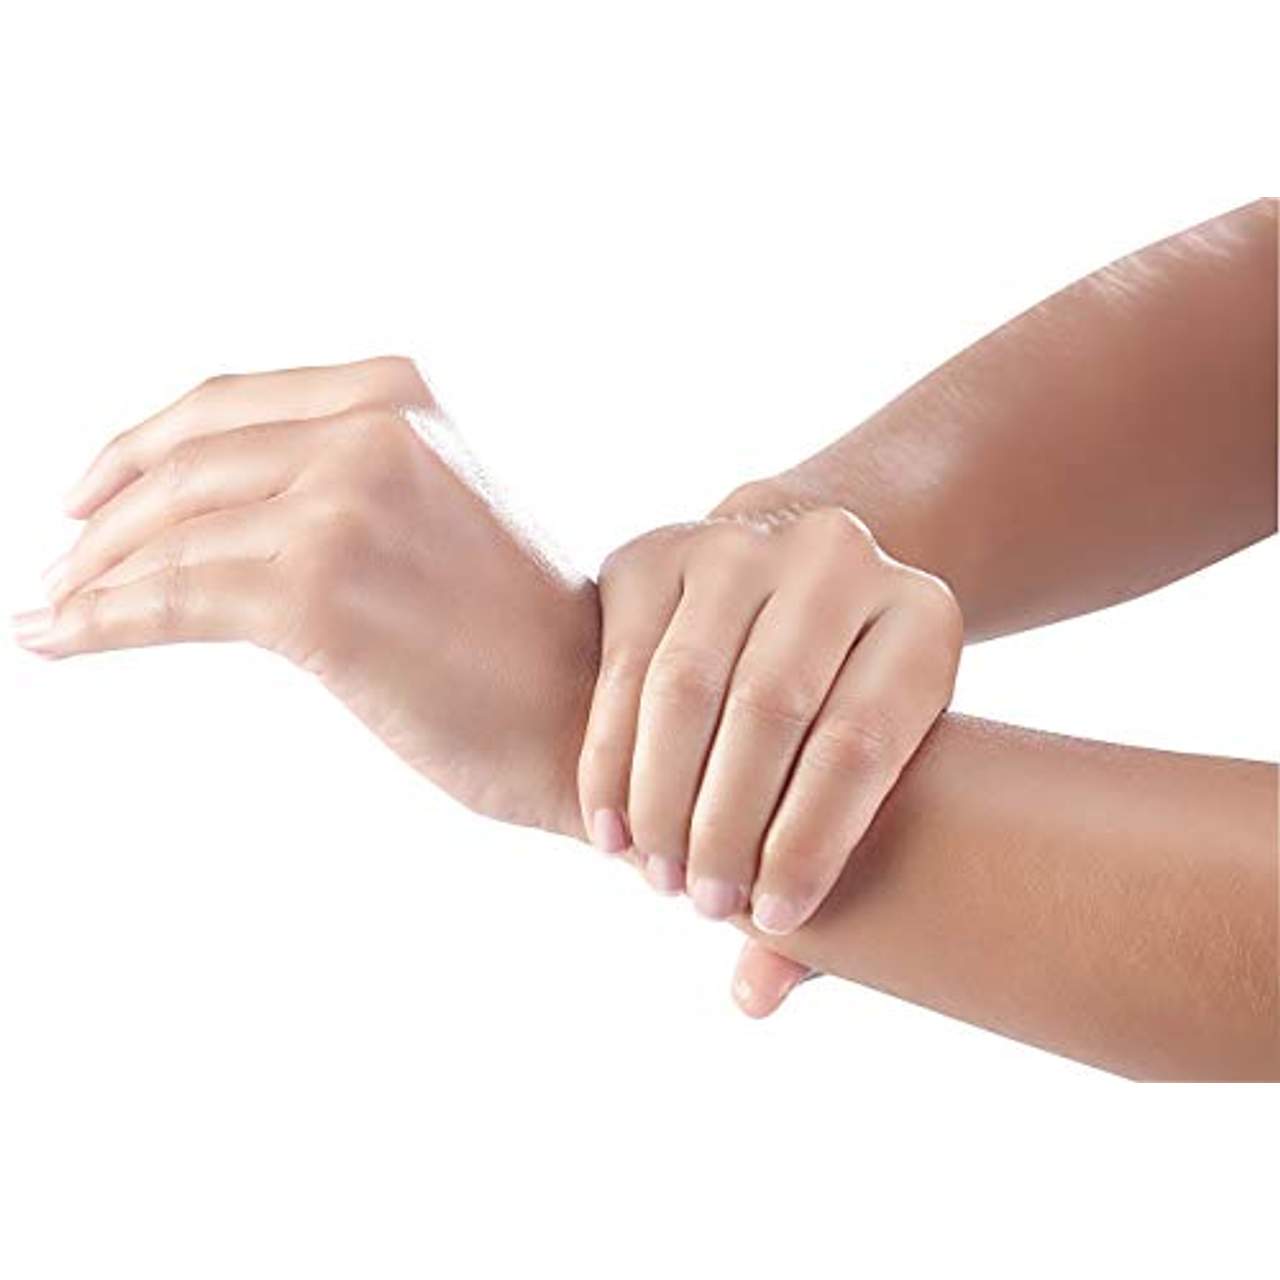 newgen medicals Handdesinfektion: 4er-Set Hand- & Flächen-Desinfektionsspray